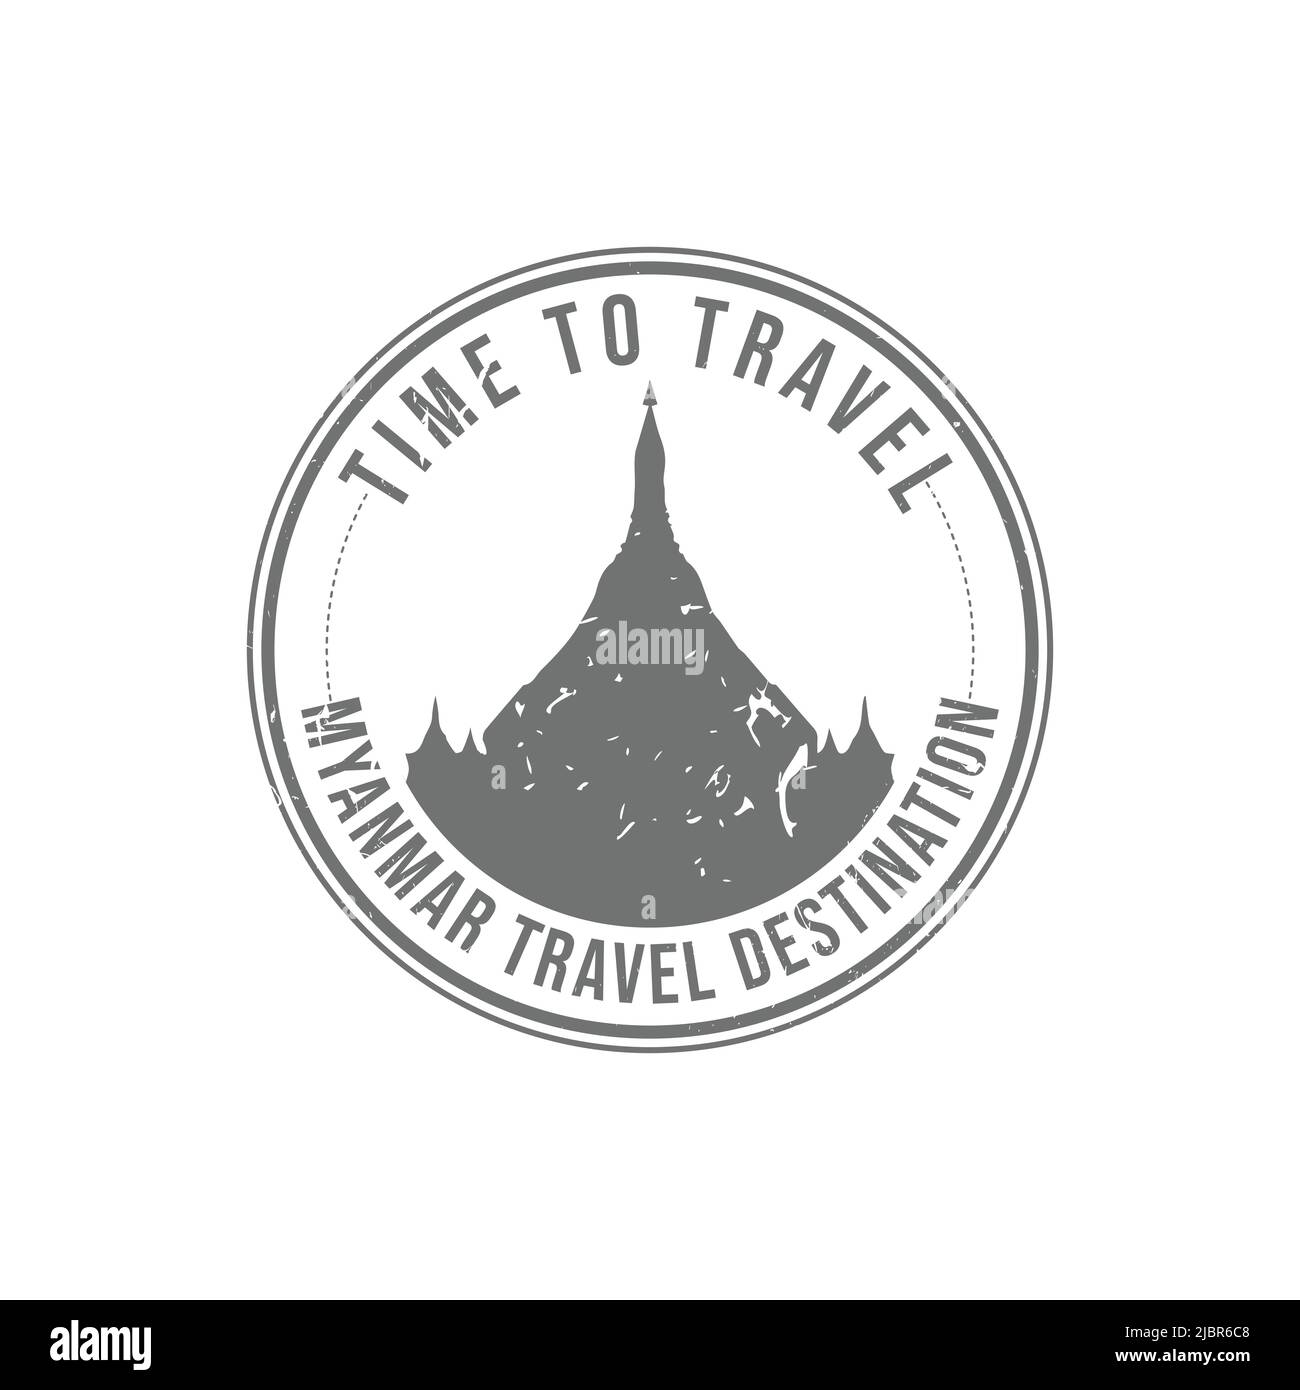 Grunge Gummistempel mit dem Text Myanmar travel Destination in der Marke geschrieben. Zeit zum Reisen. Silhouette des Shwedagon Pagodentempels Myanmar h Stock Vektor